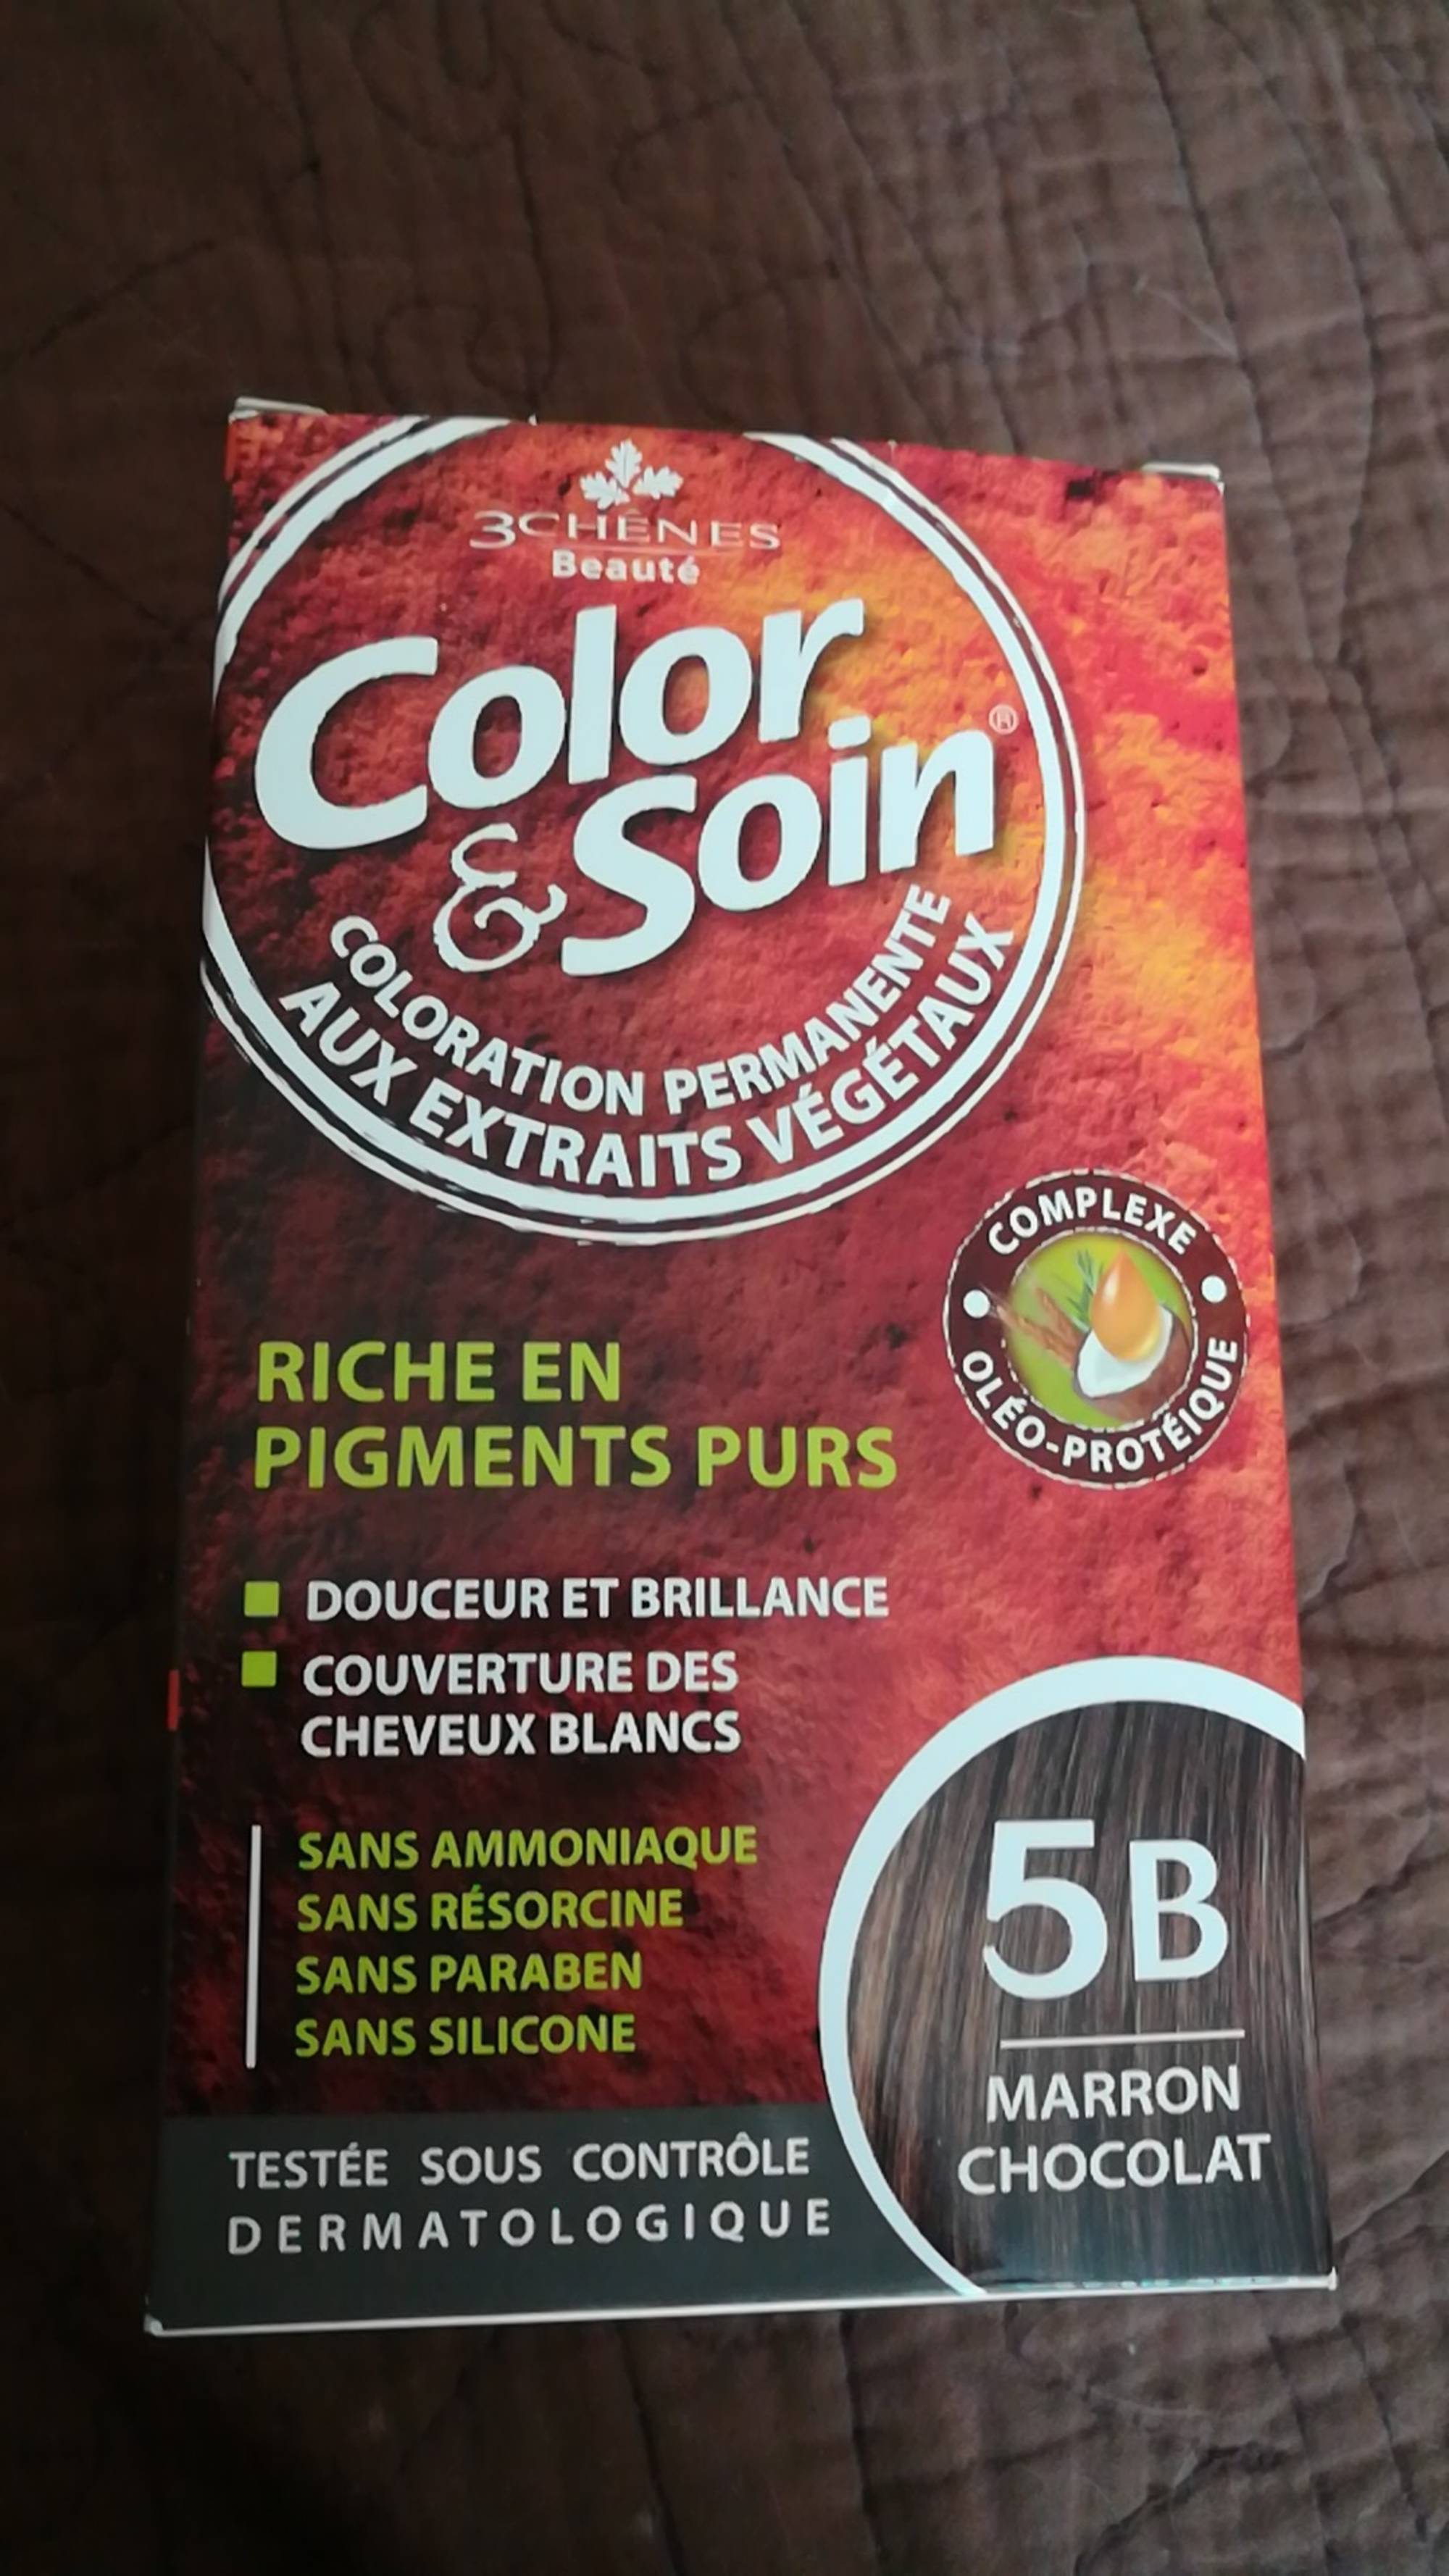 LES 3 CHÊNES - Color & soin - Coloration permanente aux extraits végétaux - 5B marron chocolat 